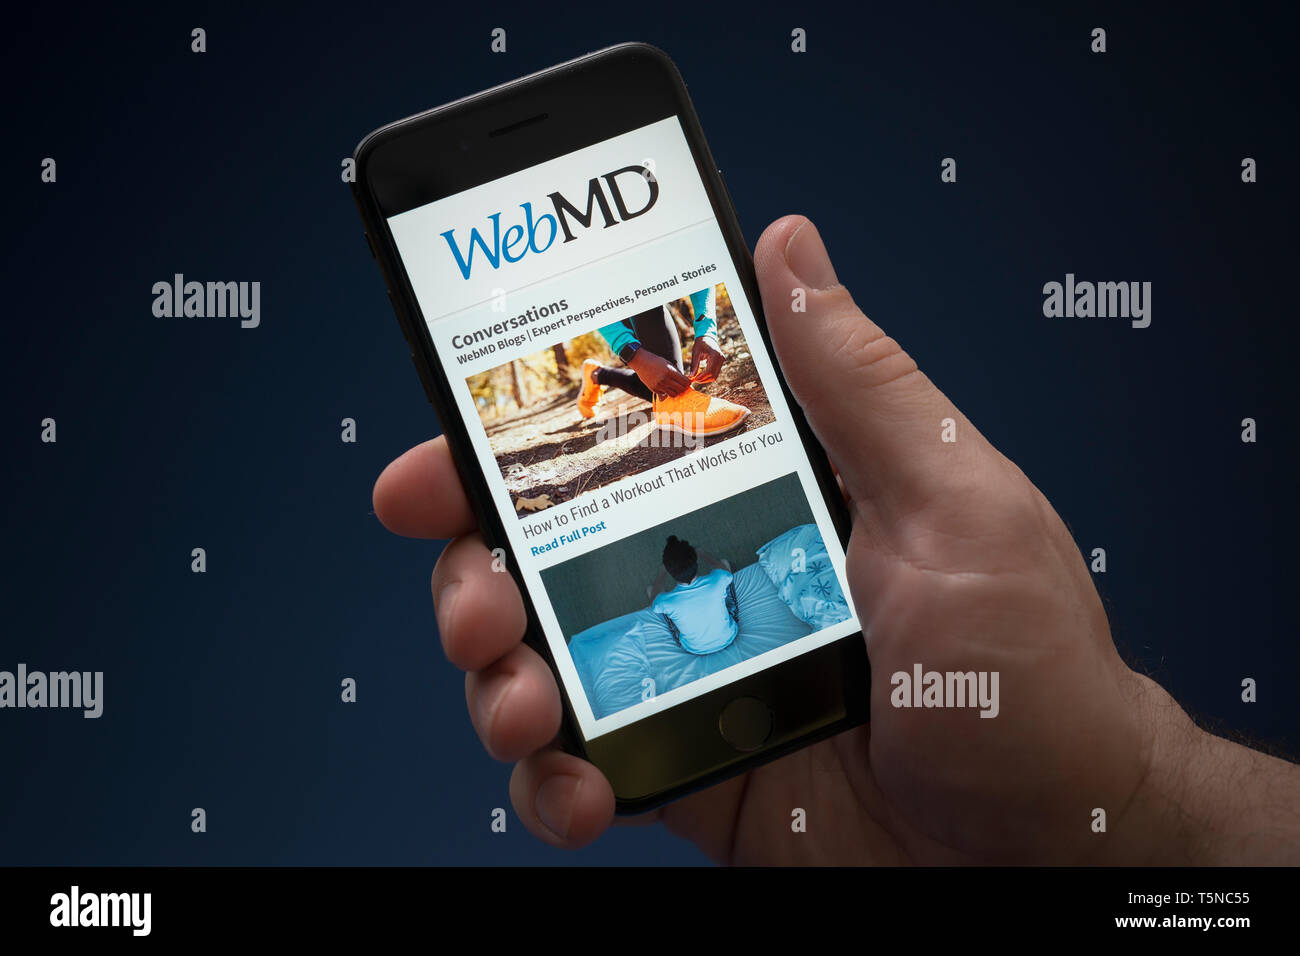 Un hombre mira el iPhone que muestra el logotipo de WebMD (uso Editorial solamente). Foto de stock